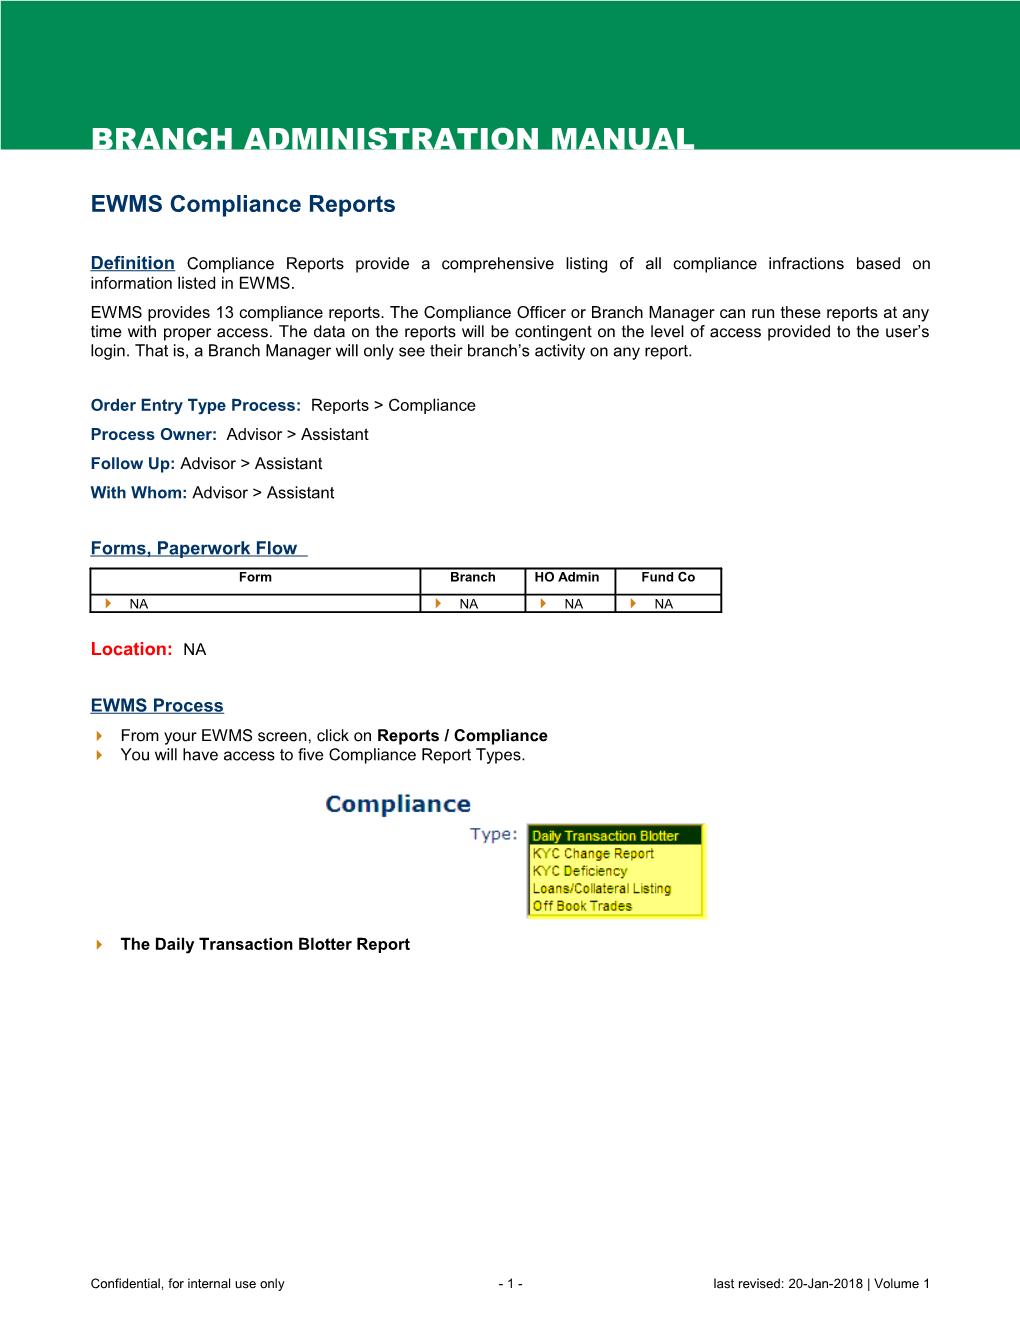 EWMS Compliance Reports